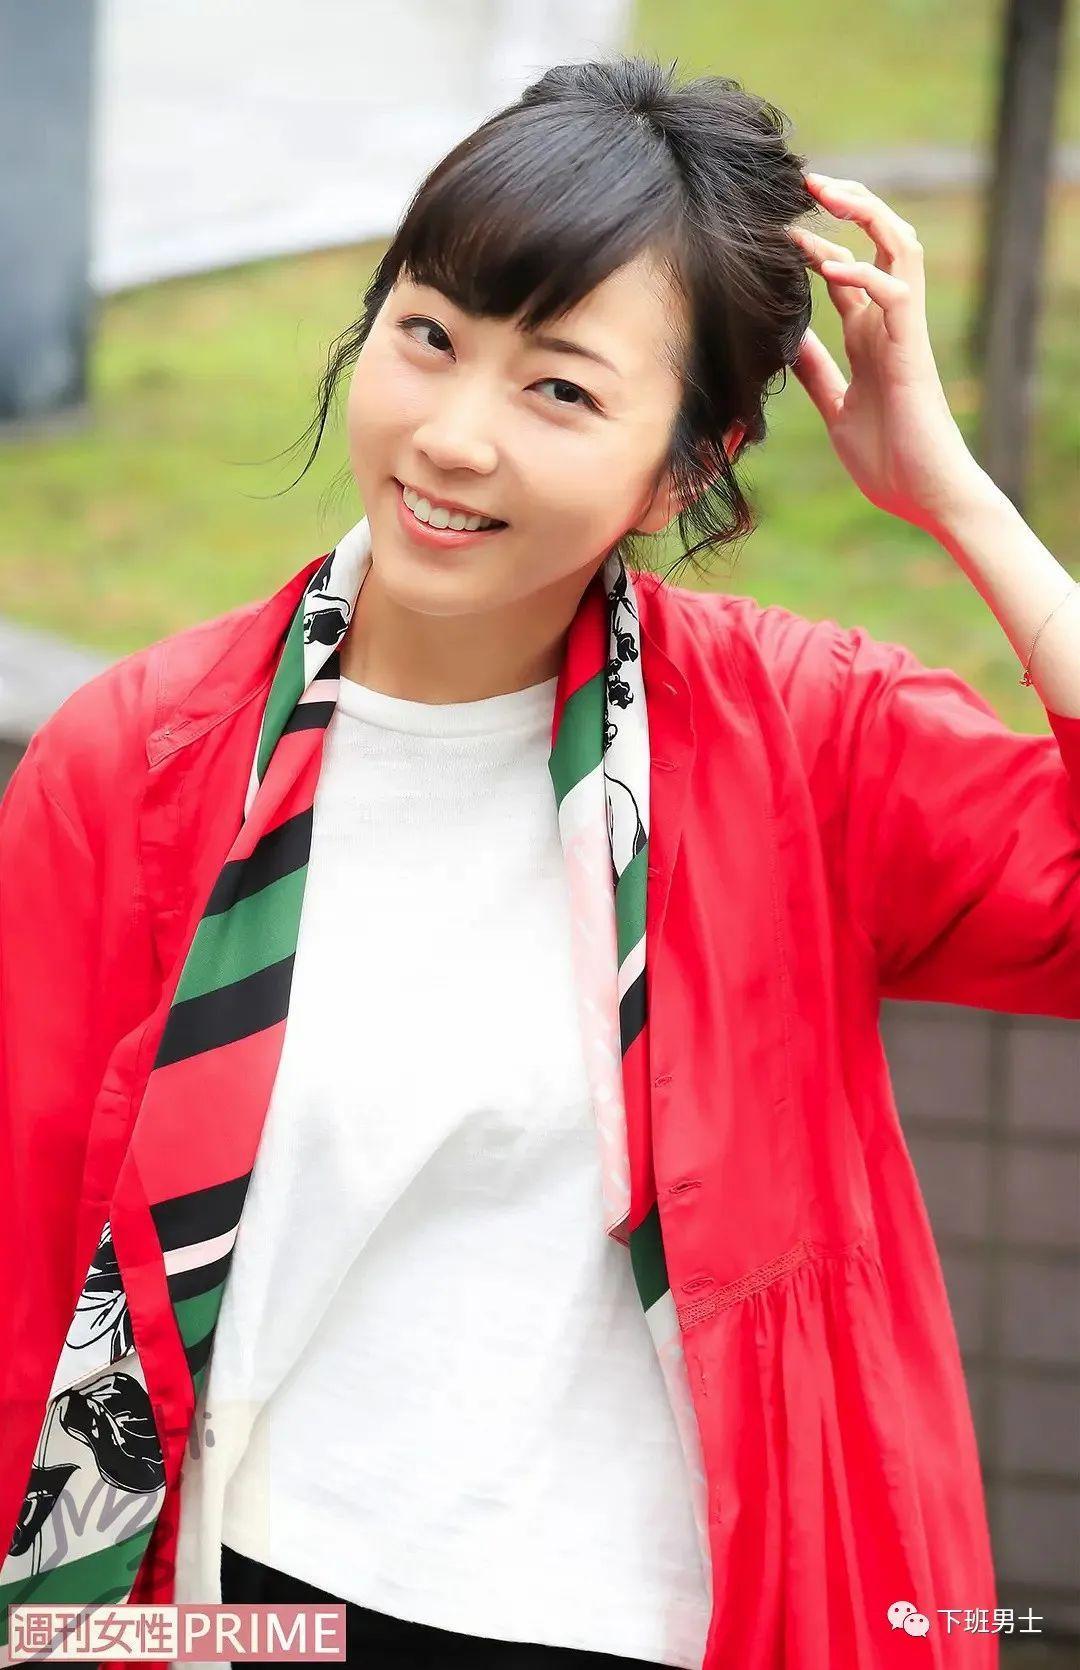 日本女明星木南晴夏（Kinami Haruka）资料简介及生活照写真图集